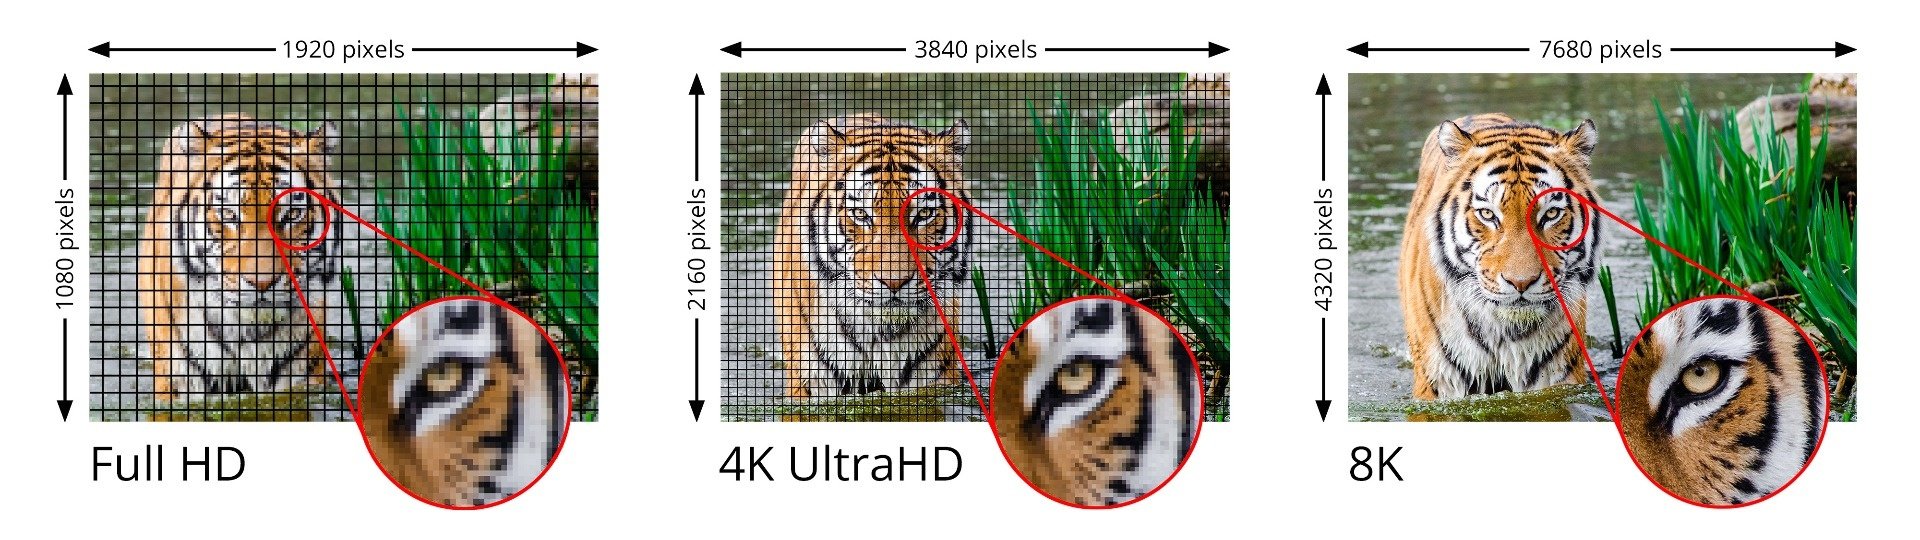 1080P 4K 8K comparison